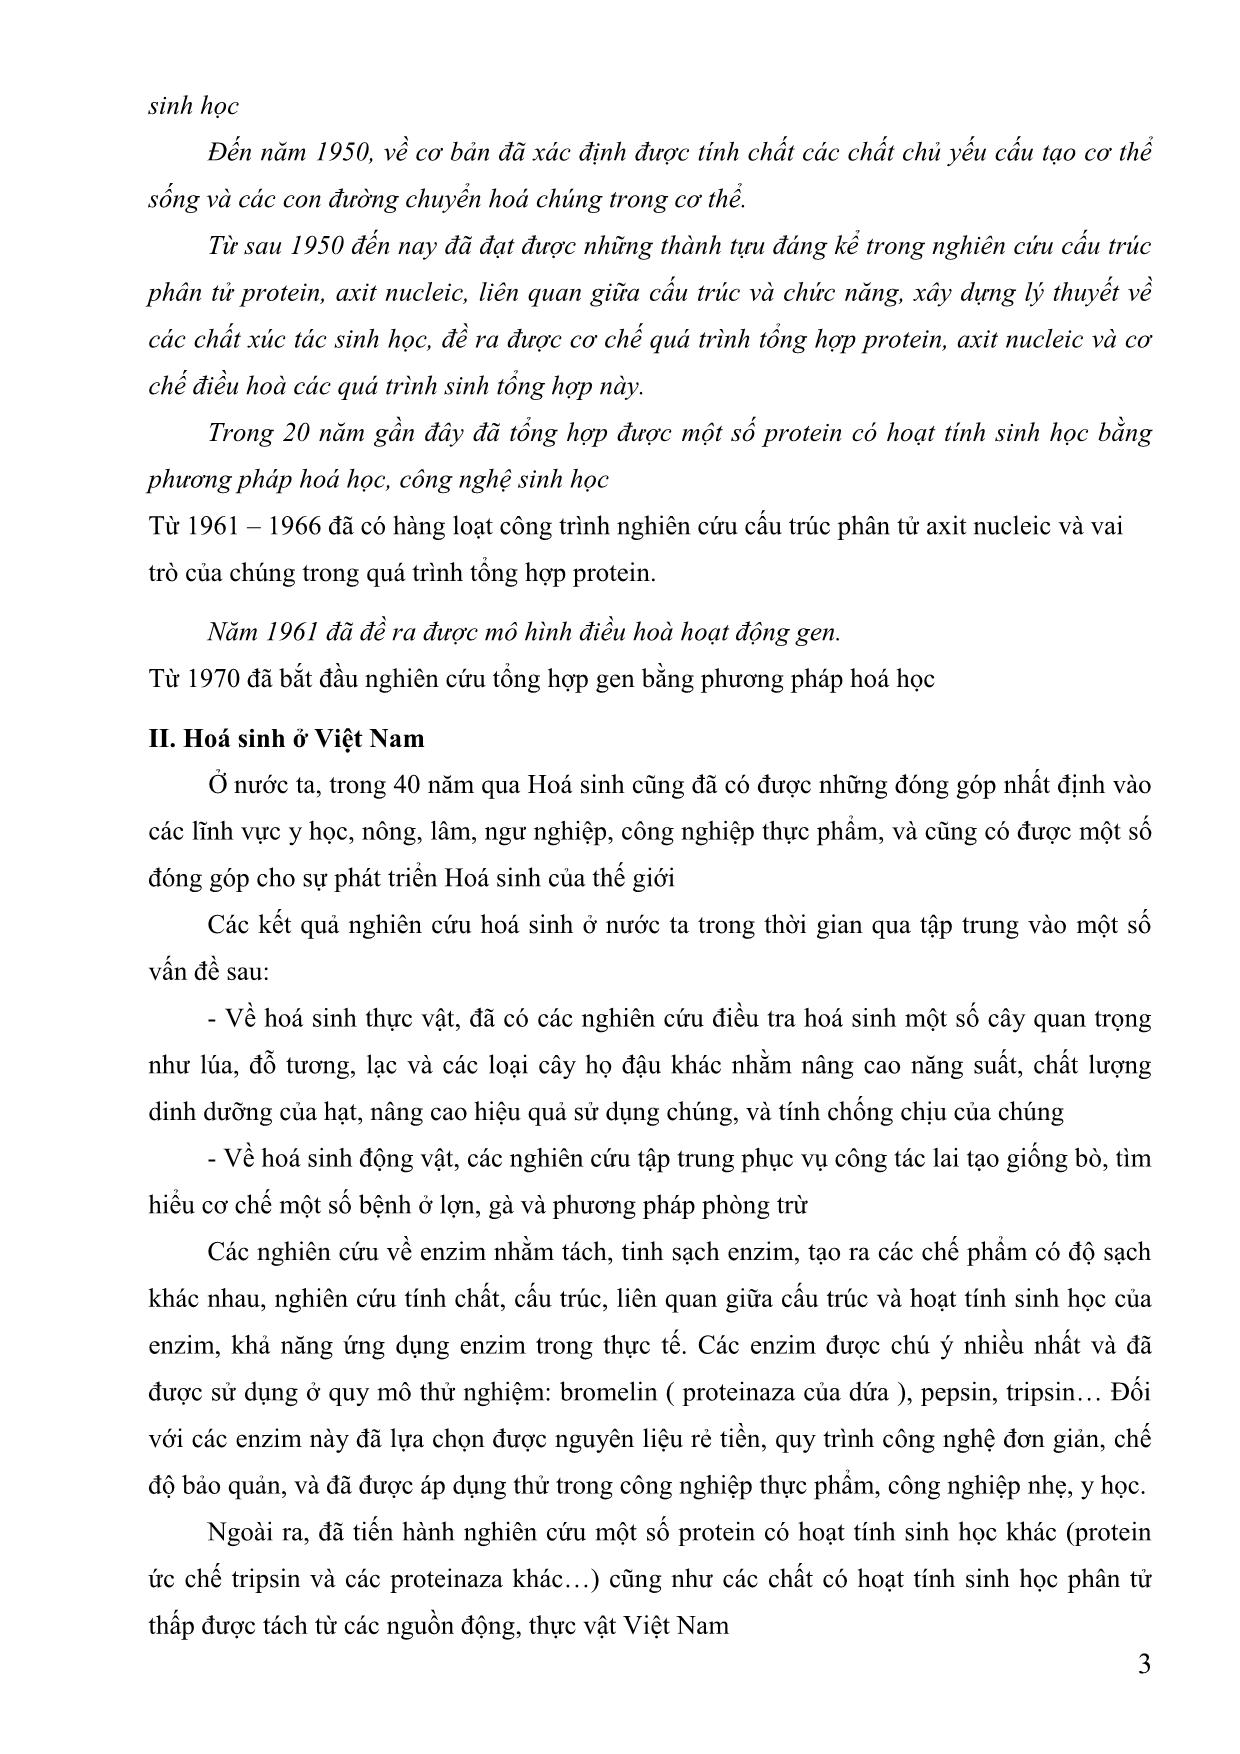 Giáo trình Hóa sinh (Phần 1) trang 3